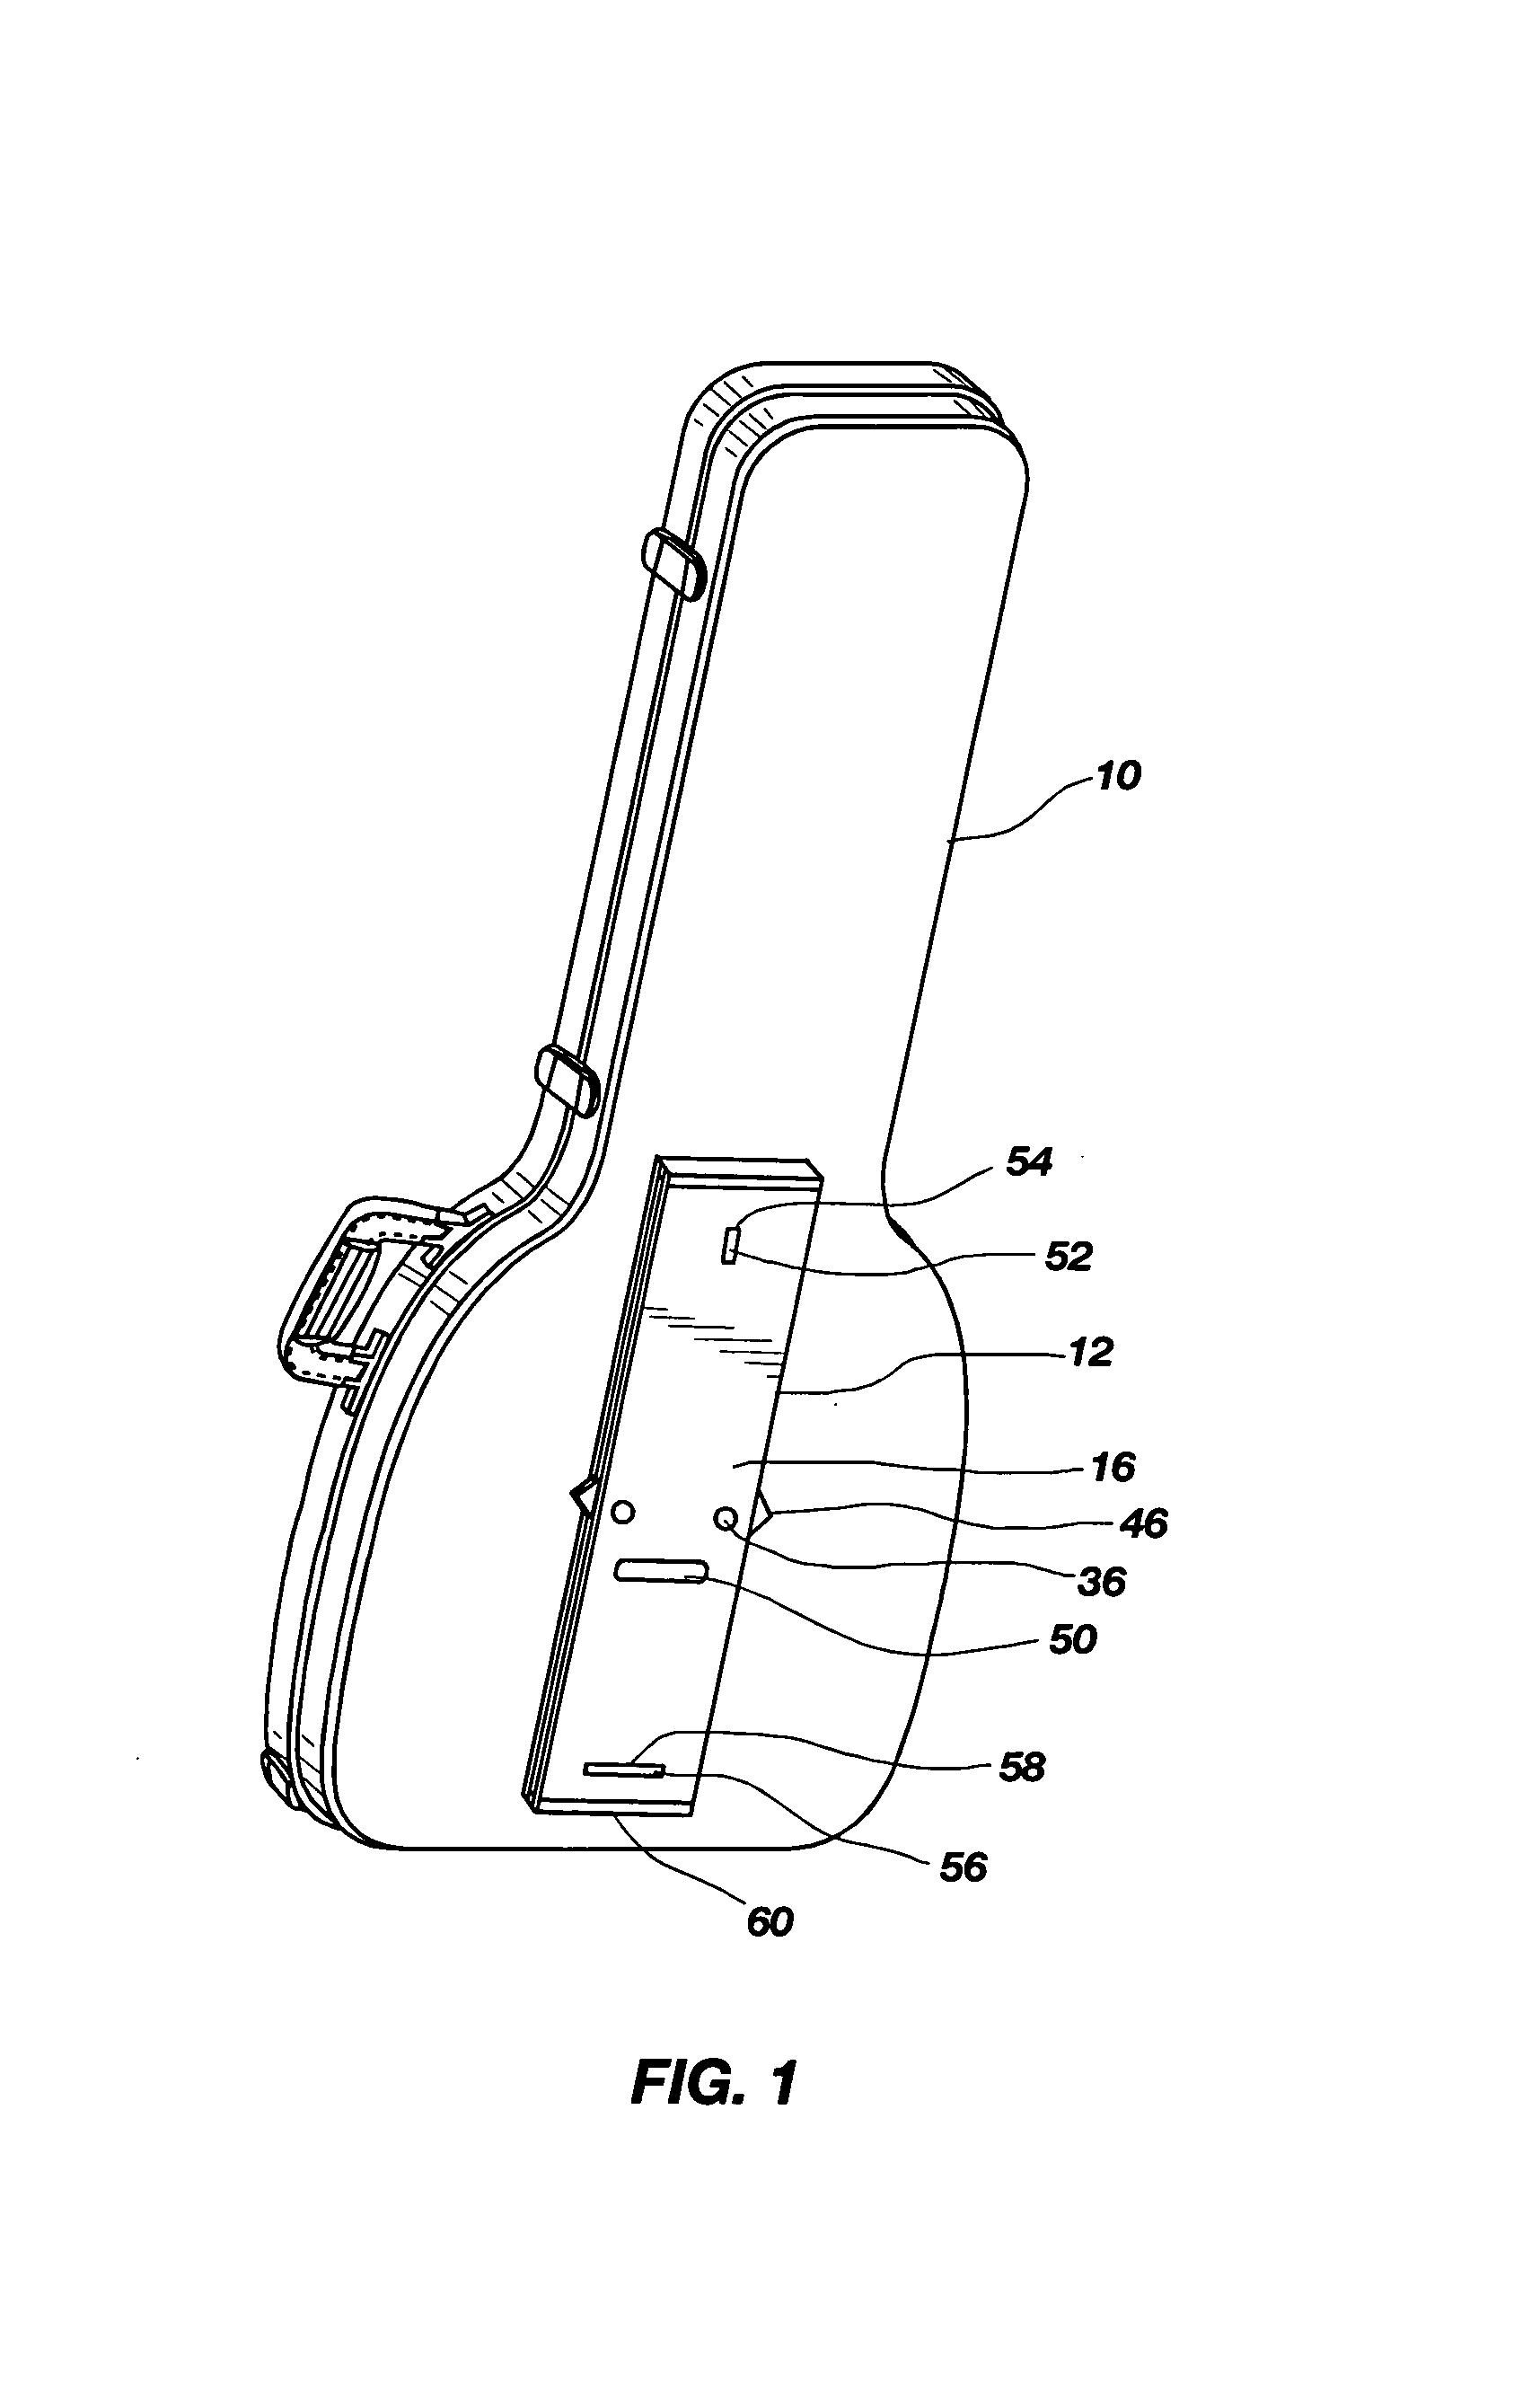 Instrument case stand